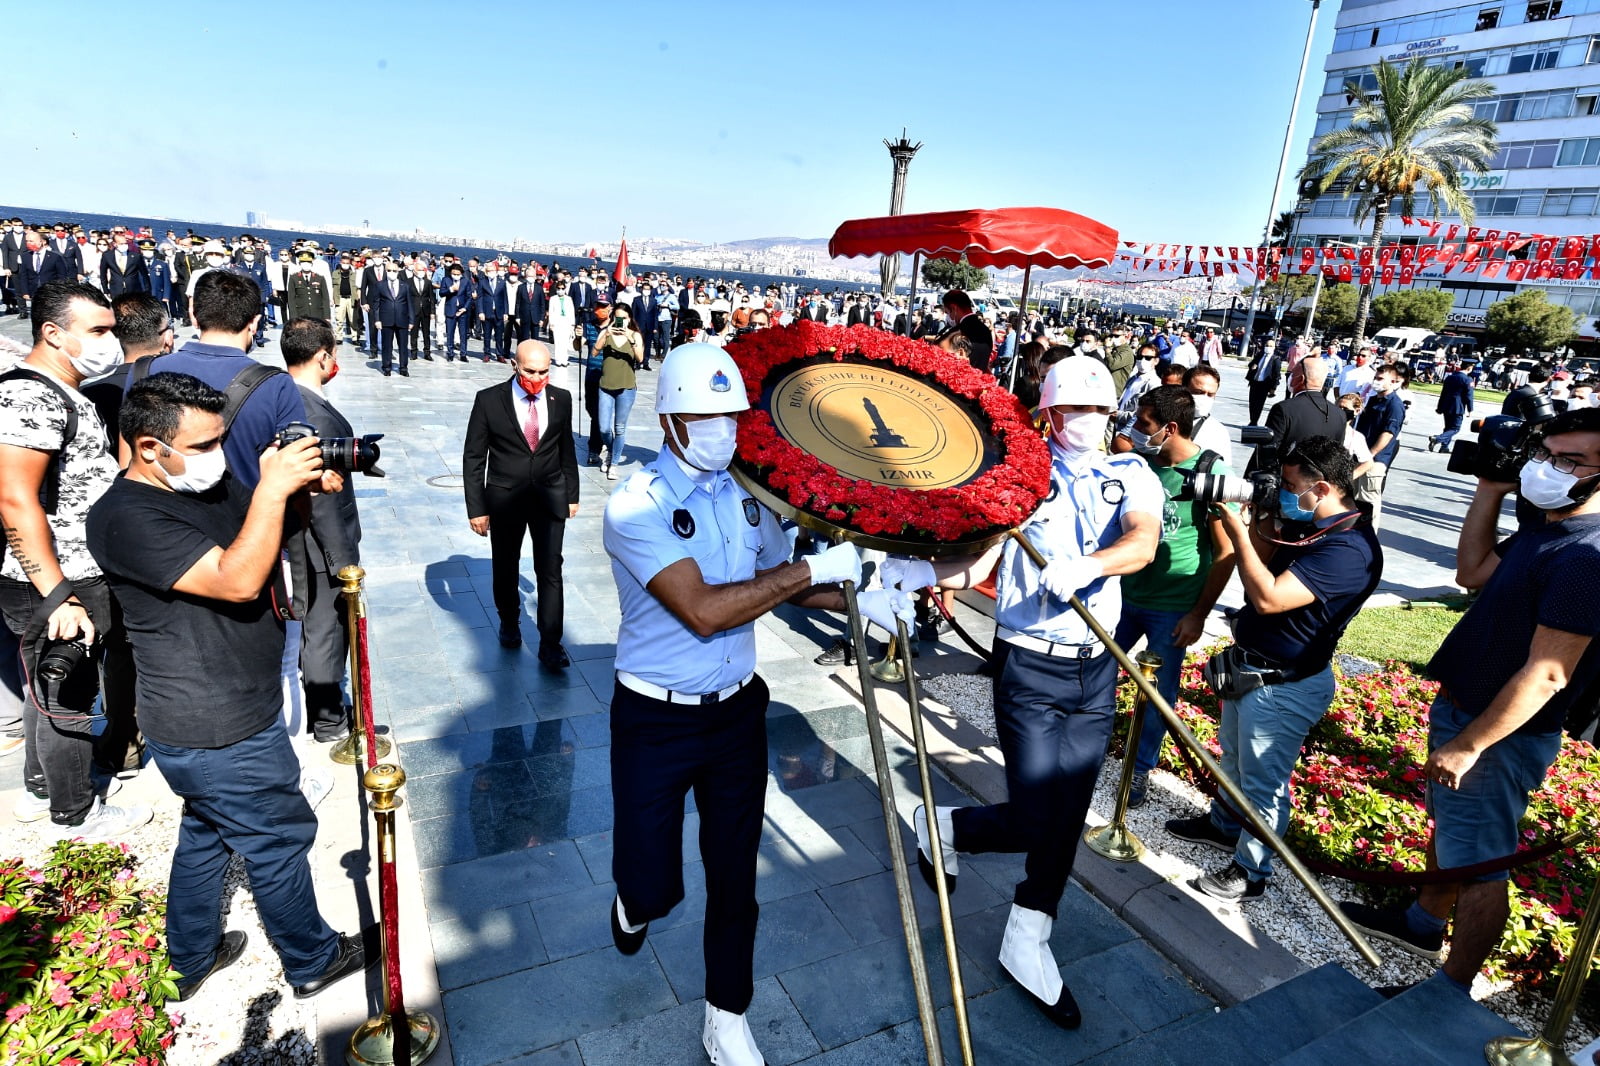 9eylül İzmir'in kurtuluşunun 98. yıldönümü etkinlikleri, Cumhuriyet Meydanı'nda düzenlenen törenle devam etti. Türk Yıldızları ve Solotürk, tören boyunca selamlama uçuşu yaptı. Törende konuşan Başkan Soyer, 9 Eylül'ün dünya halklarına örnek bir bağımsızlık mücadelesi olduğunu söyledi.</p>
<p>İzmir Büyükşehir Belediyesi'nce düzenlenen 9 Eylül etkinlikleri, Cumhuriyet Meydanı'ndaki resmi törenle devam etti. Törene İzmir Valisi Yavuz Selim Köşger, Ege Ordu ve Garnizon Komutanı Korgeneral Ali Sivri, İzmir Büyükşehir Belediye Başkanı Tunç Soyer, CHP İzmir Milletvekillerinden Kani Beko, Atila Sertel, Sevda Erdan Kılıç, Özcan Purçu, Murat Bakan, Bedri Serter, MHP İzmir Milletvekilleri Tamer Osmanağaoğlu ile Hasan Kalyoncu, AK Parti Genel Başkan Yardımcısı ve İzmir Milletvekili Hamza Dağ, AK Parti İzmir milletvekillerinden
Mahmut Atilla Kaya, Necip Nasır, Cemal Bekle, İzmir'deki üniversitelerin rektörleri, siyaset ve iş dünyasının temsilcileri katıldı. Cumhuriyet Meydanı'nda bulunan Atatürk Anıtı'na çelenk sunulmasının ardından tören saygı duruşu ve İstiklal Marşı'nın okunmasıyla devam etti. Tören boyunca selamlama uçuşu yapan Türk Yıldızları ile Solotürk, gökyüzüne ay ve yıldız çizdi. Cumhurbaşkanı Recep Tayyip Erdoğan'ın mesajı da törende okundu. “Dünya halklarına örnek bir bağımsızlık mücadelesi”
Daha sonra konuşma yapan İzmir Büyükşehir Belediye Başkanı Tunç Soyer, 9 Eylül'ün İzmir’in kurtuluşu ve Cumhuriyet’e giden taşların döşendiği sürecin başladığı gün olduğunu söyledi. Dünya halklarına örnek bir bağımsızlık mücadelesi ve özgürlük hikayesinin ilk cümlelerinin 98 yıl önce burada, İzmir’de yazıldığını belirten Tunç Soyer, “Şüphesiz her ülkenin, her milletin tarihinde zaferler ve kahramanlık destanları var. Ve elbette her toplum, bu destan ve öykülerle haklı bir övünç yaşar. Ancak bize kahramanlarımızın bıraktığı destan, bu şehrin parçası olan bizleri, çok ayrı gururlandırıyor” dedi. “9 Eylül sadece bir kentin işgalden kurtuluşunun yıldönümü değil”
9 Eylül'ün tüm dünyaya gözdağı veren emperyalist güçlerin yenilmez olmadığının, birlik içinde ve inanç dolu bir toplum karşısında çaresiz kaldıklarının kanıtı olduğunu ifade eden Tunç Soyer, coşkuyla kutlanan 9 Eylül'ün, bu nedenle sadece bir kentin işgalden kurtuluşunun yıldönümü olmadığını söyledi. Soyer, bu kritik tarihin aynı zamanda topyekun bir mücadele ile sömürgeci anlayışlara geçit verilmeyeceğini ve tüm halklar için umudun var olduğunu gösterdiğini aktardı. Başkan Soyer, “İzmir’in kurtuluşuyla bayraklaşan mücadele; Ortadoğu’dan Afrika’ya, Güney Amerika’dan Asya’ya kadar dünya halkları için esaretten bağımsızlığa, karanlıktan aydınlığa çıkışın ilham kaynağı oldu” diye konuştu. “İnsanlık tarihinin en büyük direnişi”
Başkan Soyer, 9 Eylül ruhunun, Gazi Mustafa Kemal Atatürk’ün önderliğinde ekonomide ve siyasette onurlu bir varoluş mücadelesi ile dünya sahnesine çıkan Türkiye Cumhuriyeti’nin ayak sesi olduğunu kaydetti. Soyer şunları söyledi: “İzmir’in Cumhuriyet’i ve temsil ettiği tüm değerleri bu kadar sahiplenmesi; demokrasinin temellerinin atıldığı bir şehir olması ve bir halkın bağımsızlığa kavuştuğu, zafer kazandığı 9 Eylül ruhu ile ilgilidir. İzmir'in kurtuluşunun 98’nci yılında Gazi Mustafa Kemal Atatürk’ü ve her türlü zorluğa rağmen insanlık tarihinin en büyük direnişini gerçekleştirenleri, minnet ve rahmetle anıyorum. Onların cesaret ve kararlılığının hepimize ilham kaynağı olmasını diliyorum.” İzmir Hükümet Konağı’na bayrak çekildi
Cumhuriyet Meydanı’ndaki programın ardından İzmir Valiliği önündeki törene geçildi. Burada da 98 yıl önce ilk birliklerin İzmir’e girişi canlandırıldı. İzmir Valiliği'nde Türk bayrağının göndere çekildiği anlar, herkesi yeniden duygulandırdı. Ardından birlik komutanı İzmir Valisi Yavuz Selim Köşger'e Türk bayrağı verdi. İzmir Büyükşehir Belediye Başkanı Tunç Soyer de birlik komutanına plaket verdi. Türkiye Emekli Subaylar Derneği Genel Başkanı Namık Kemal Çalışkan da Anıtkabir Komutanlığı'ndan aldığı bayrağı Vali Köşger'e verdi. Soyer'e de şehitliklerden alınan topraklar verildi. Tören, bu görüntülerle sona erdi.